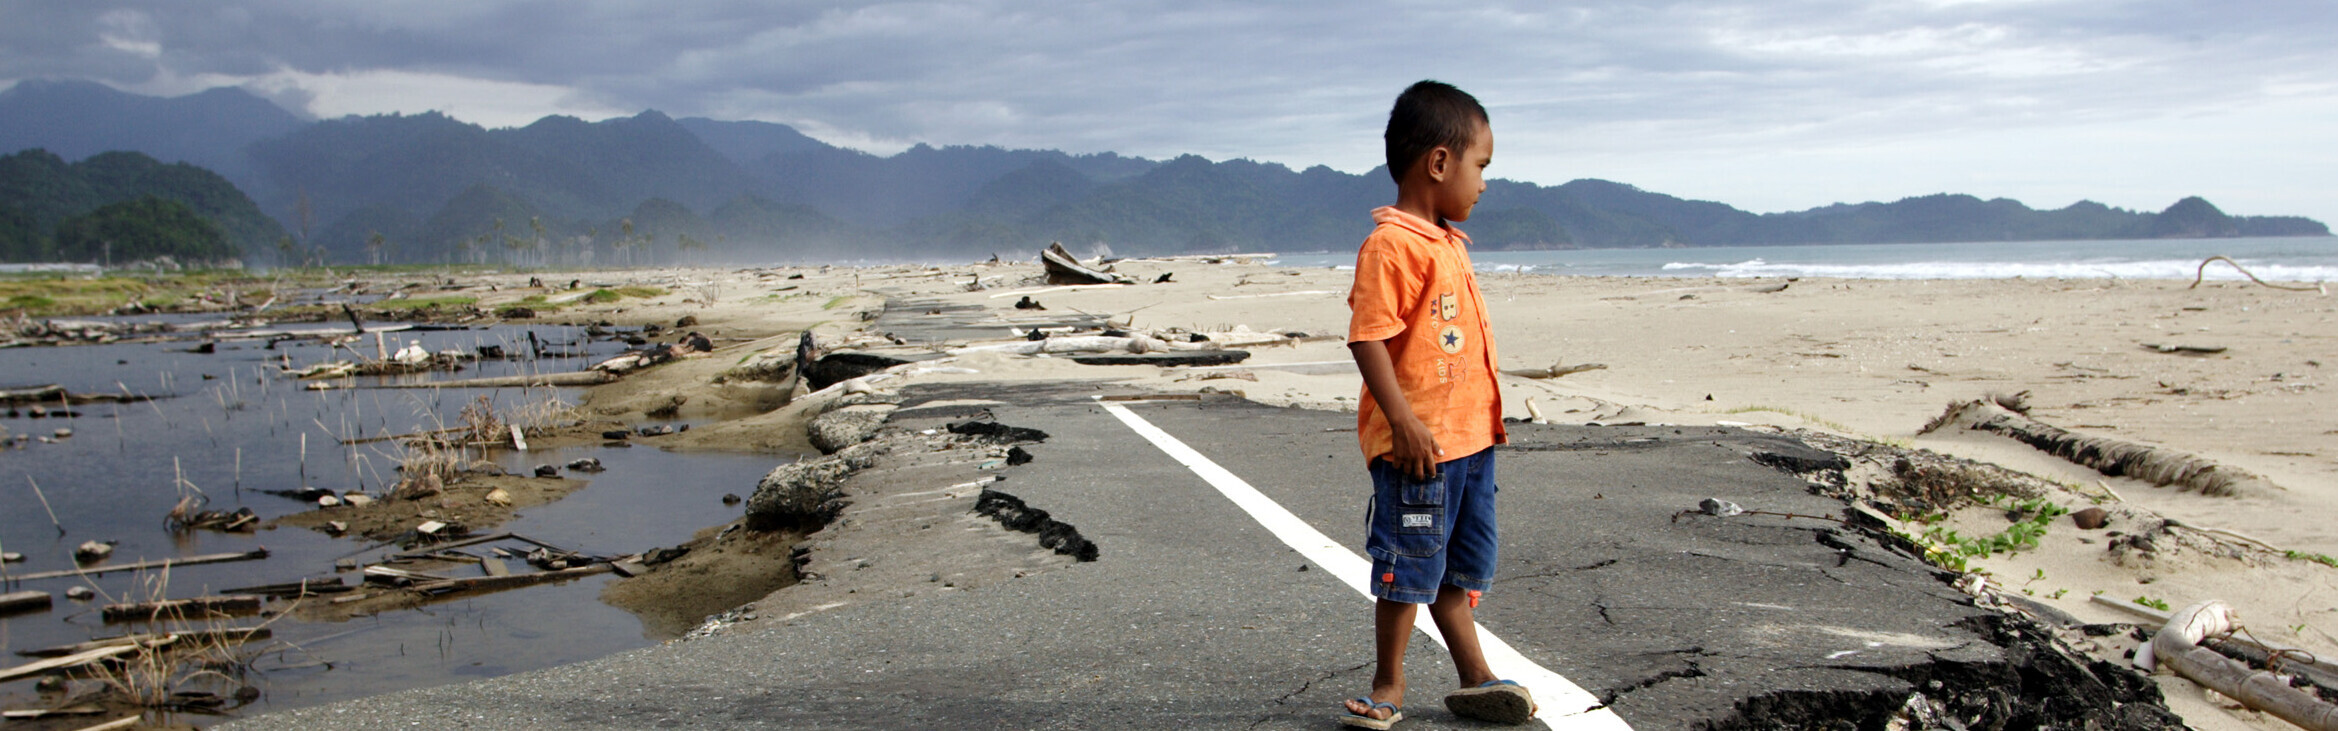 Erdbeben & ein Tsunami forderten Tote und Verletzte auf der indonesischen Insel Sulawesi - helfen Sie den Menschen mit Ihrer Spende! (Archivbild)